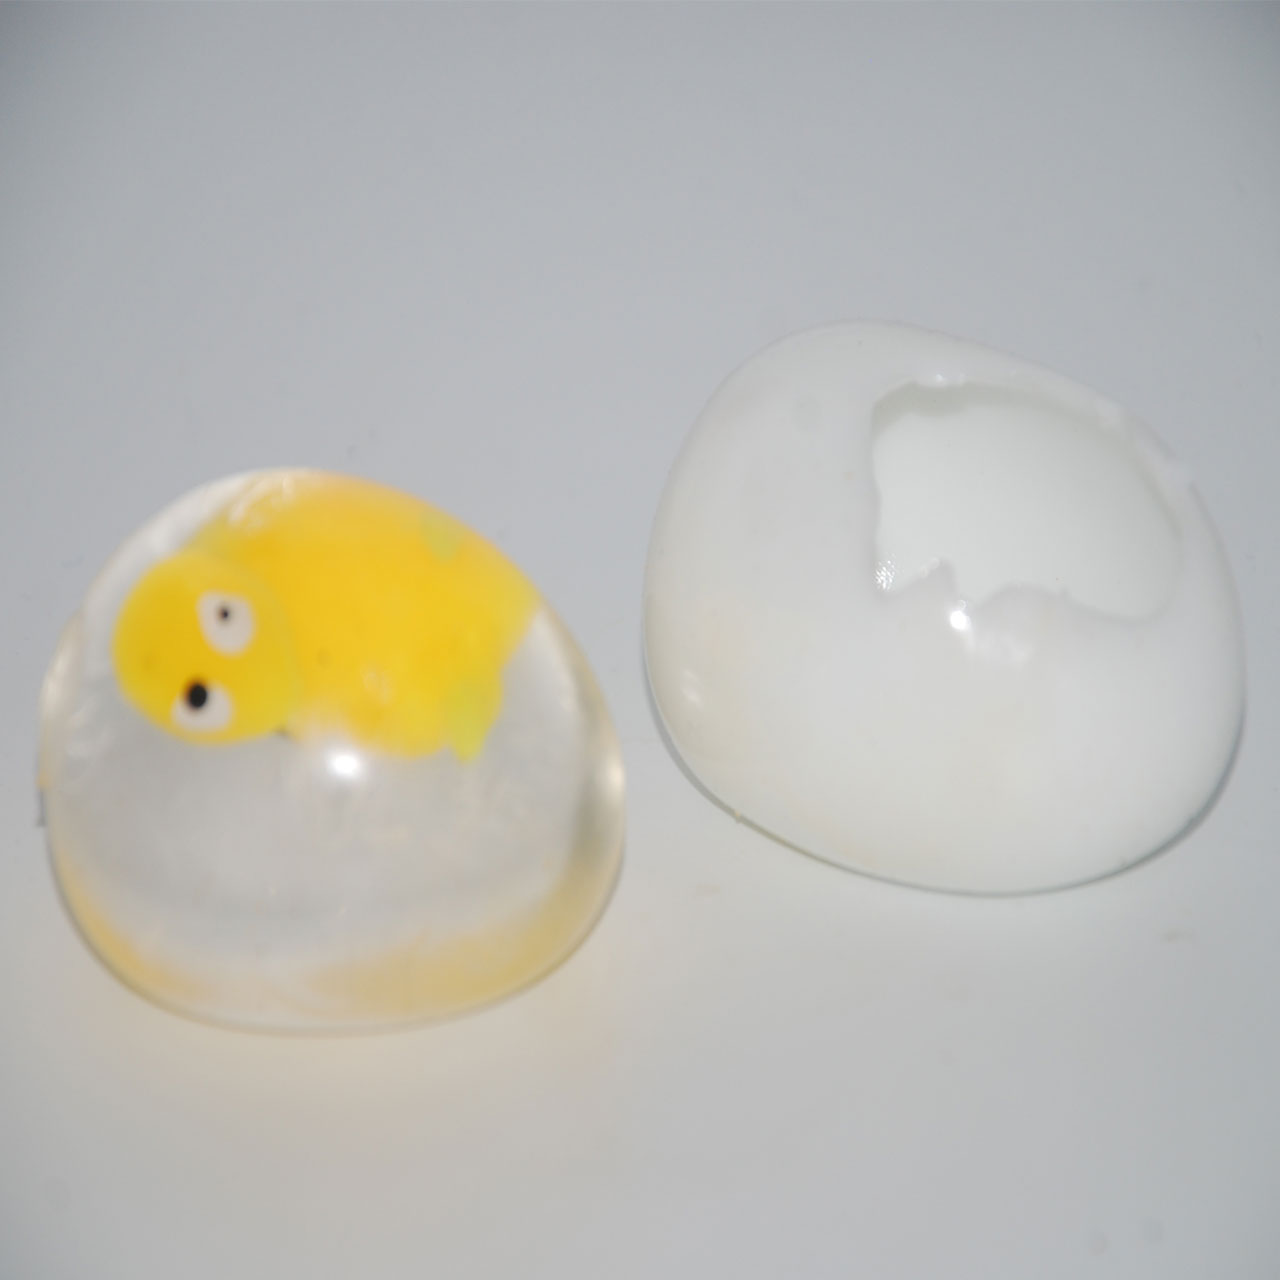 فیجت ضد استرس تخم مرغ کد B10157